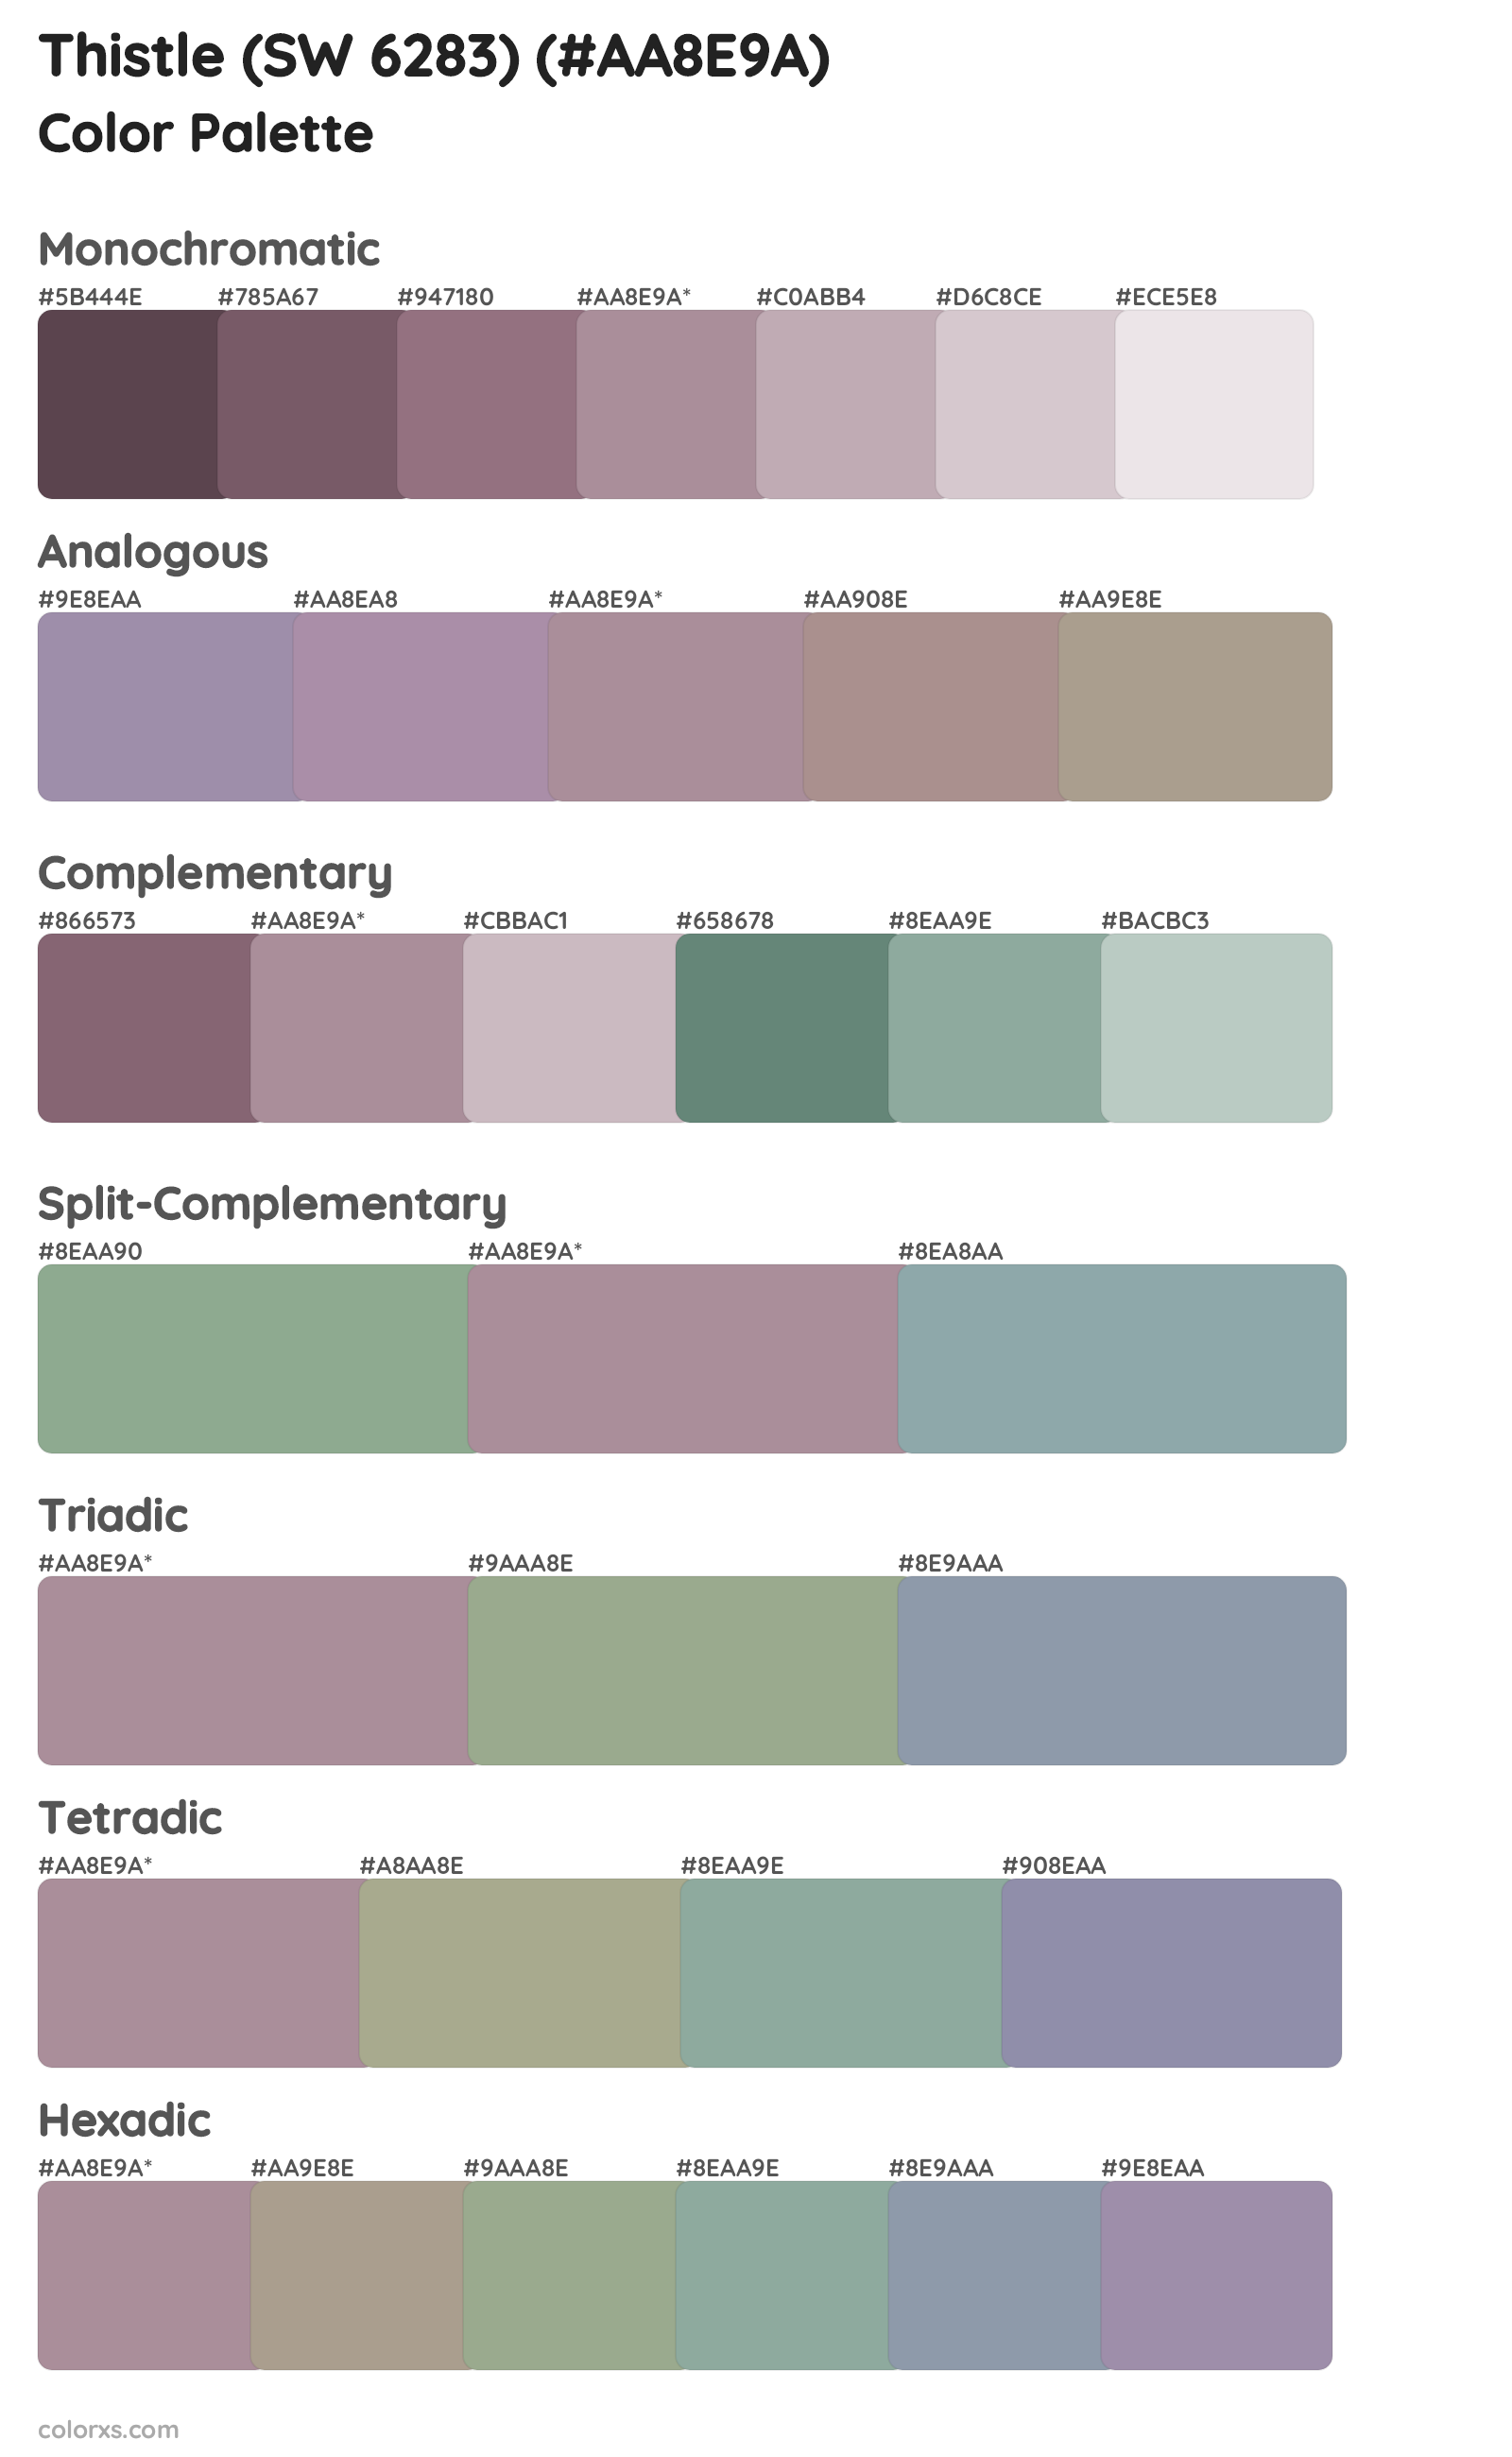 Thistle (SW 6283) Color Scheme Palettes